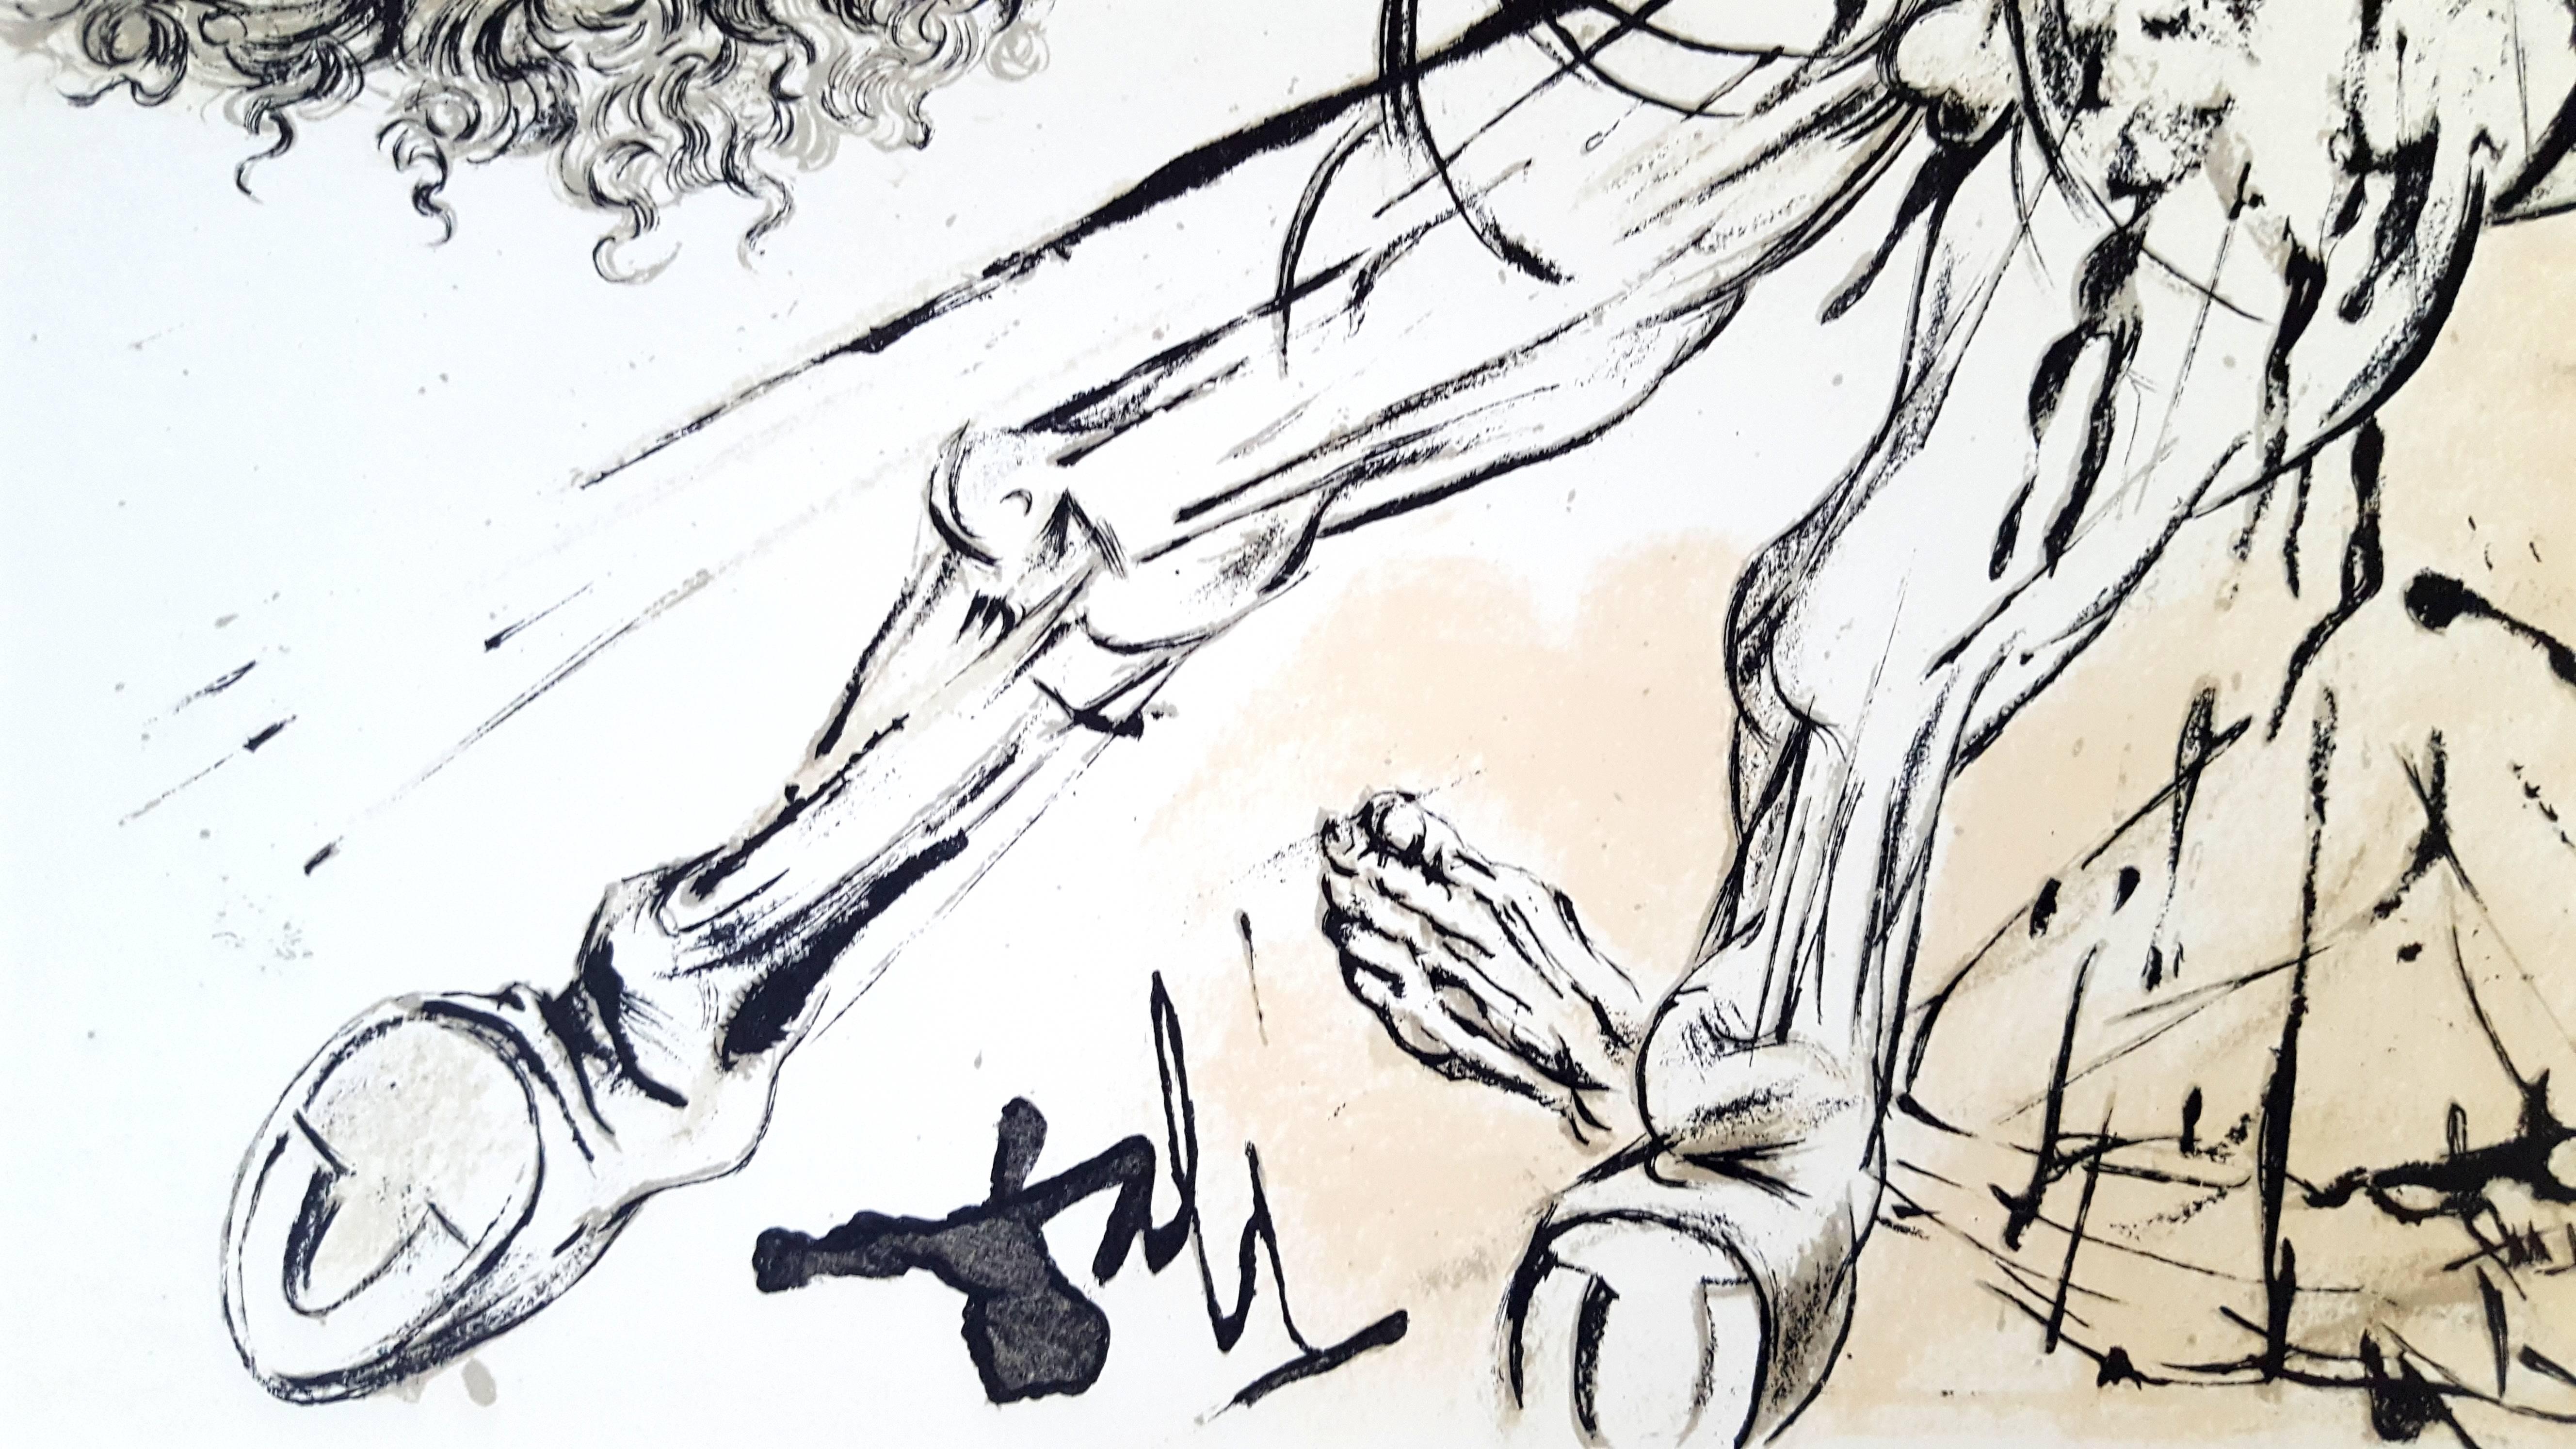 Salvador Dali - Erscheinung von Dulcinée - Original Lithographie
Joseph FORET, Paris, 1957
UNTERSCHRIFT : auf dem Bild gedruckt
LIMITED : 197 Exemplare. 
Größe: 41 x 33 cm
REFERENZEN : Feld 57-1 / Michler & Lopsinger 1001-1012. 
INFORMATIONEN :